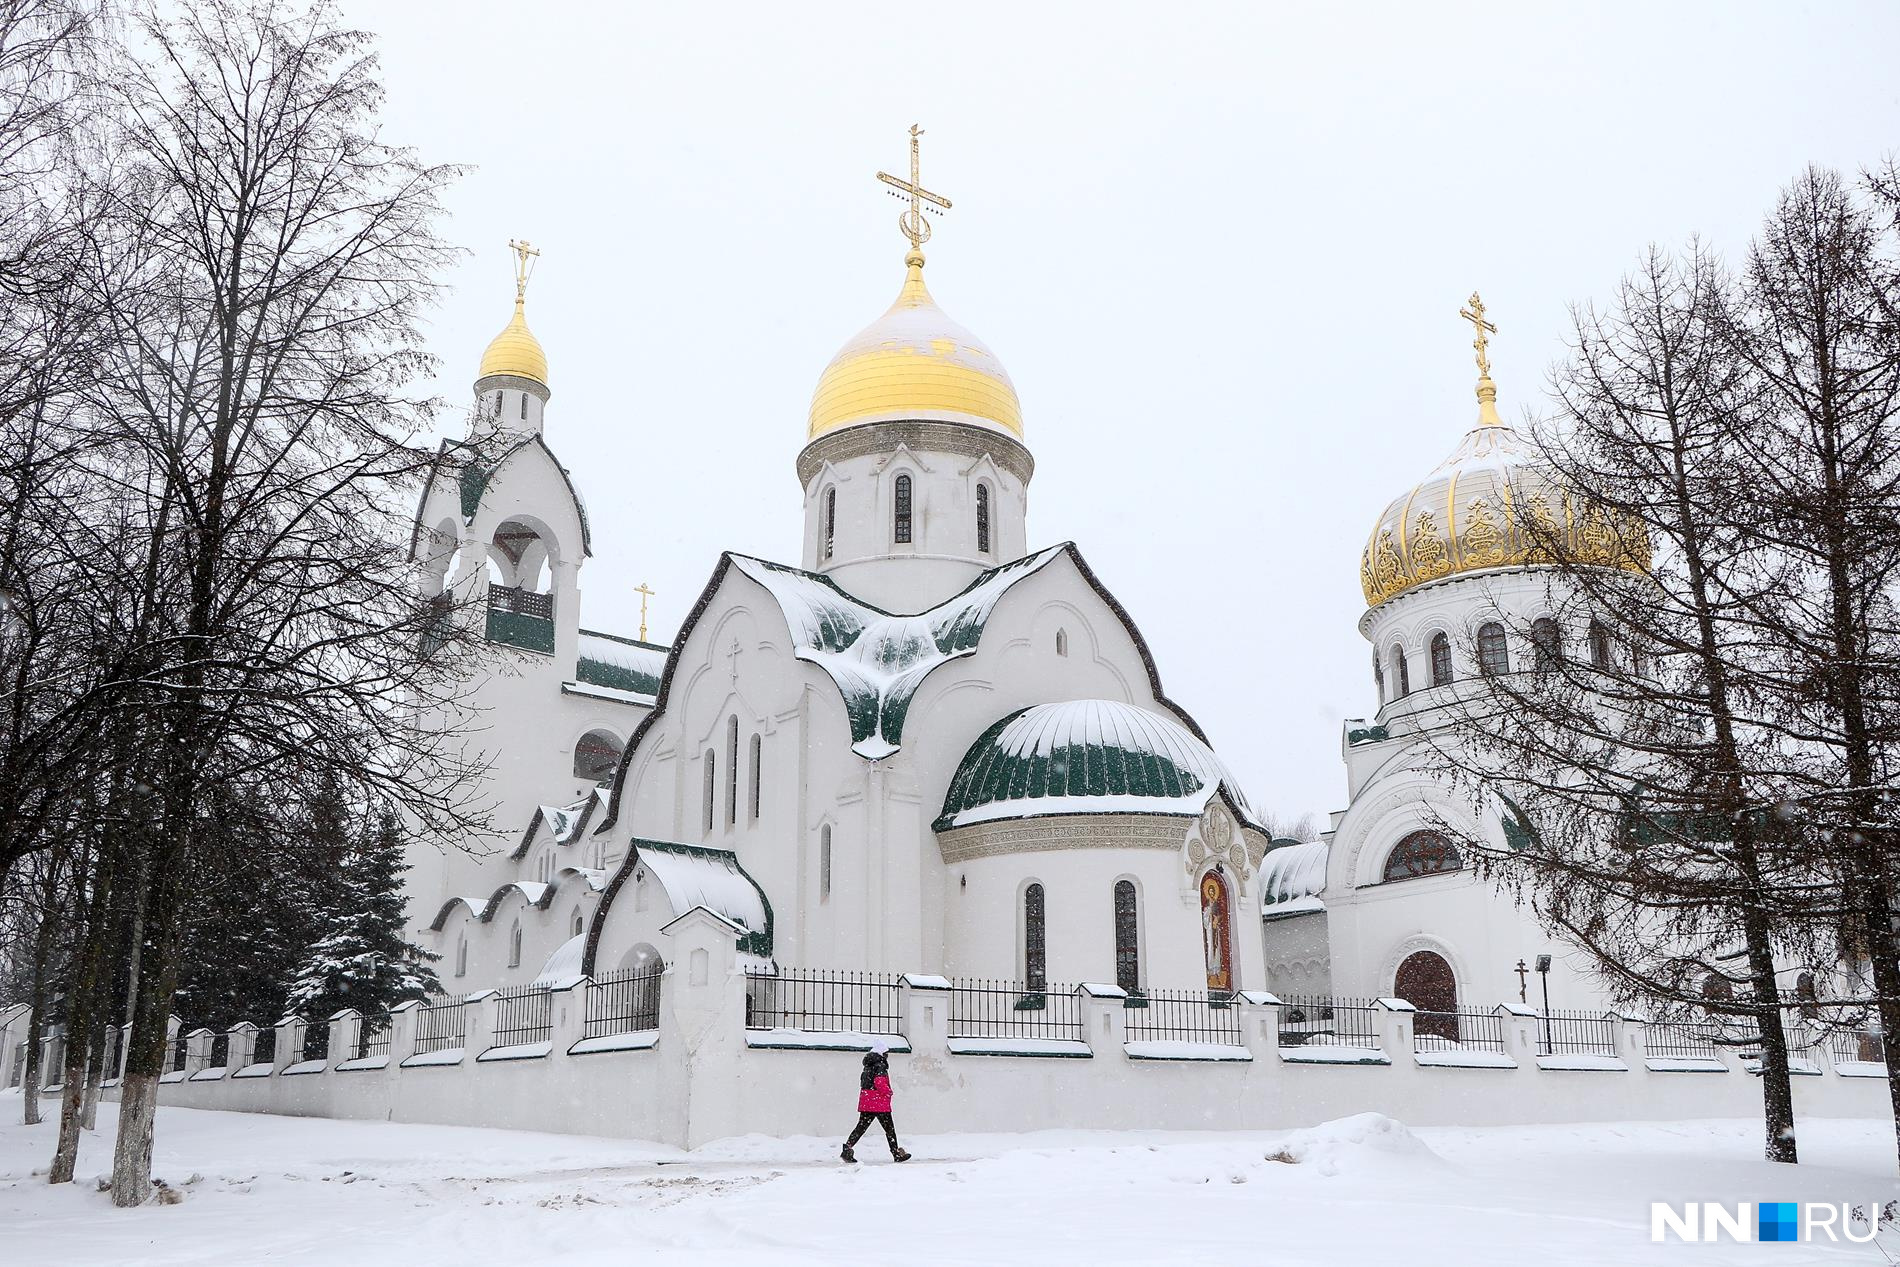 Комплекс воплотил черты стилей церковной архитектуры Византии и Великого Новгорода